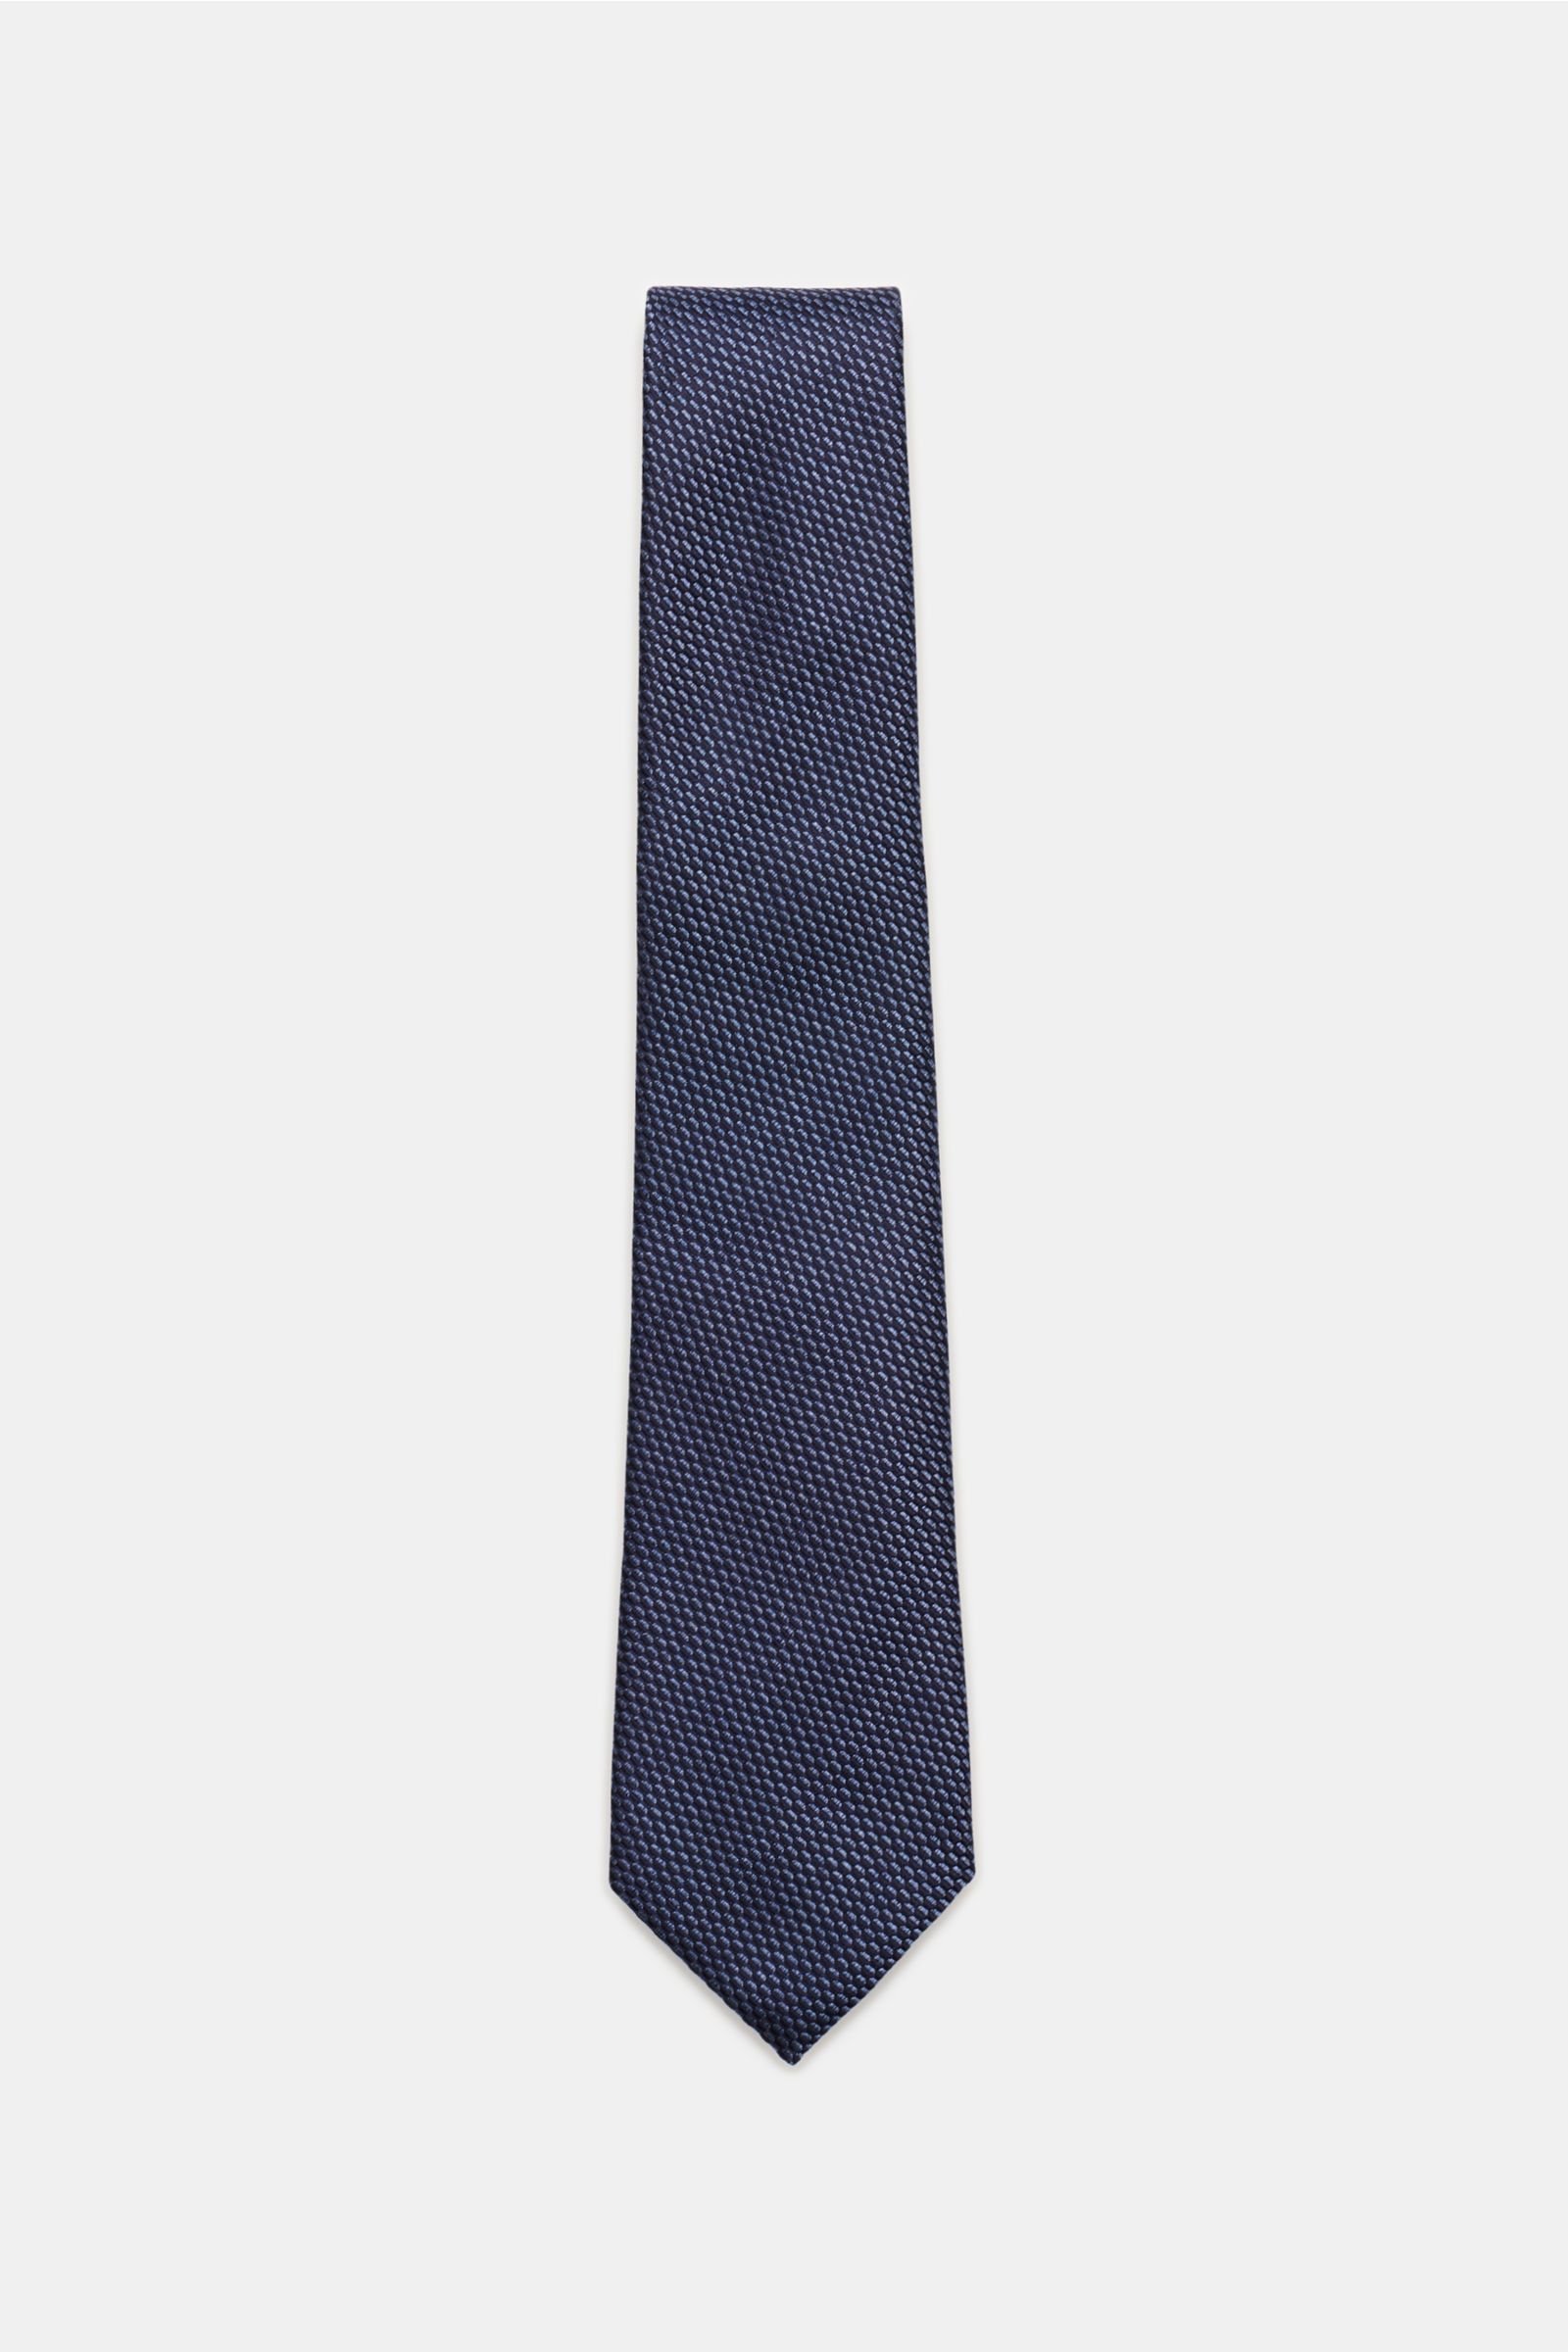 Silk tie grey-blue patterned